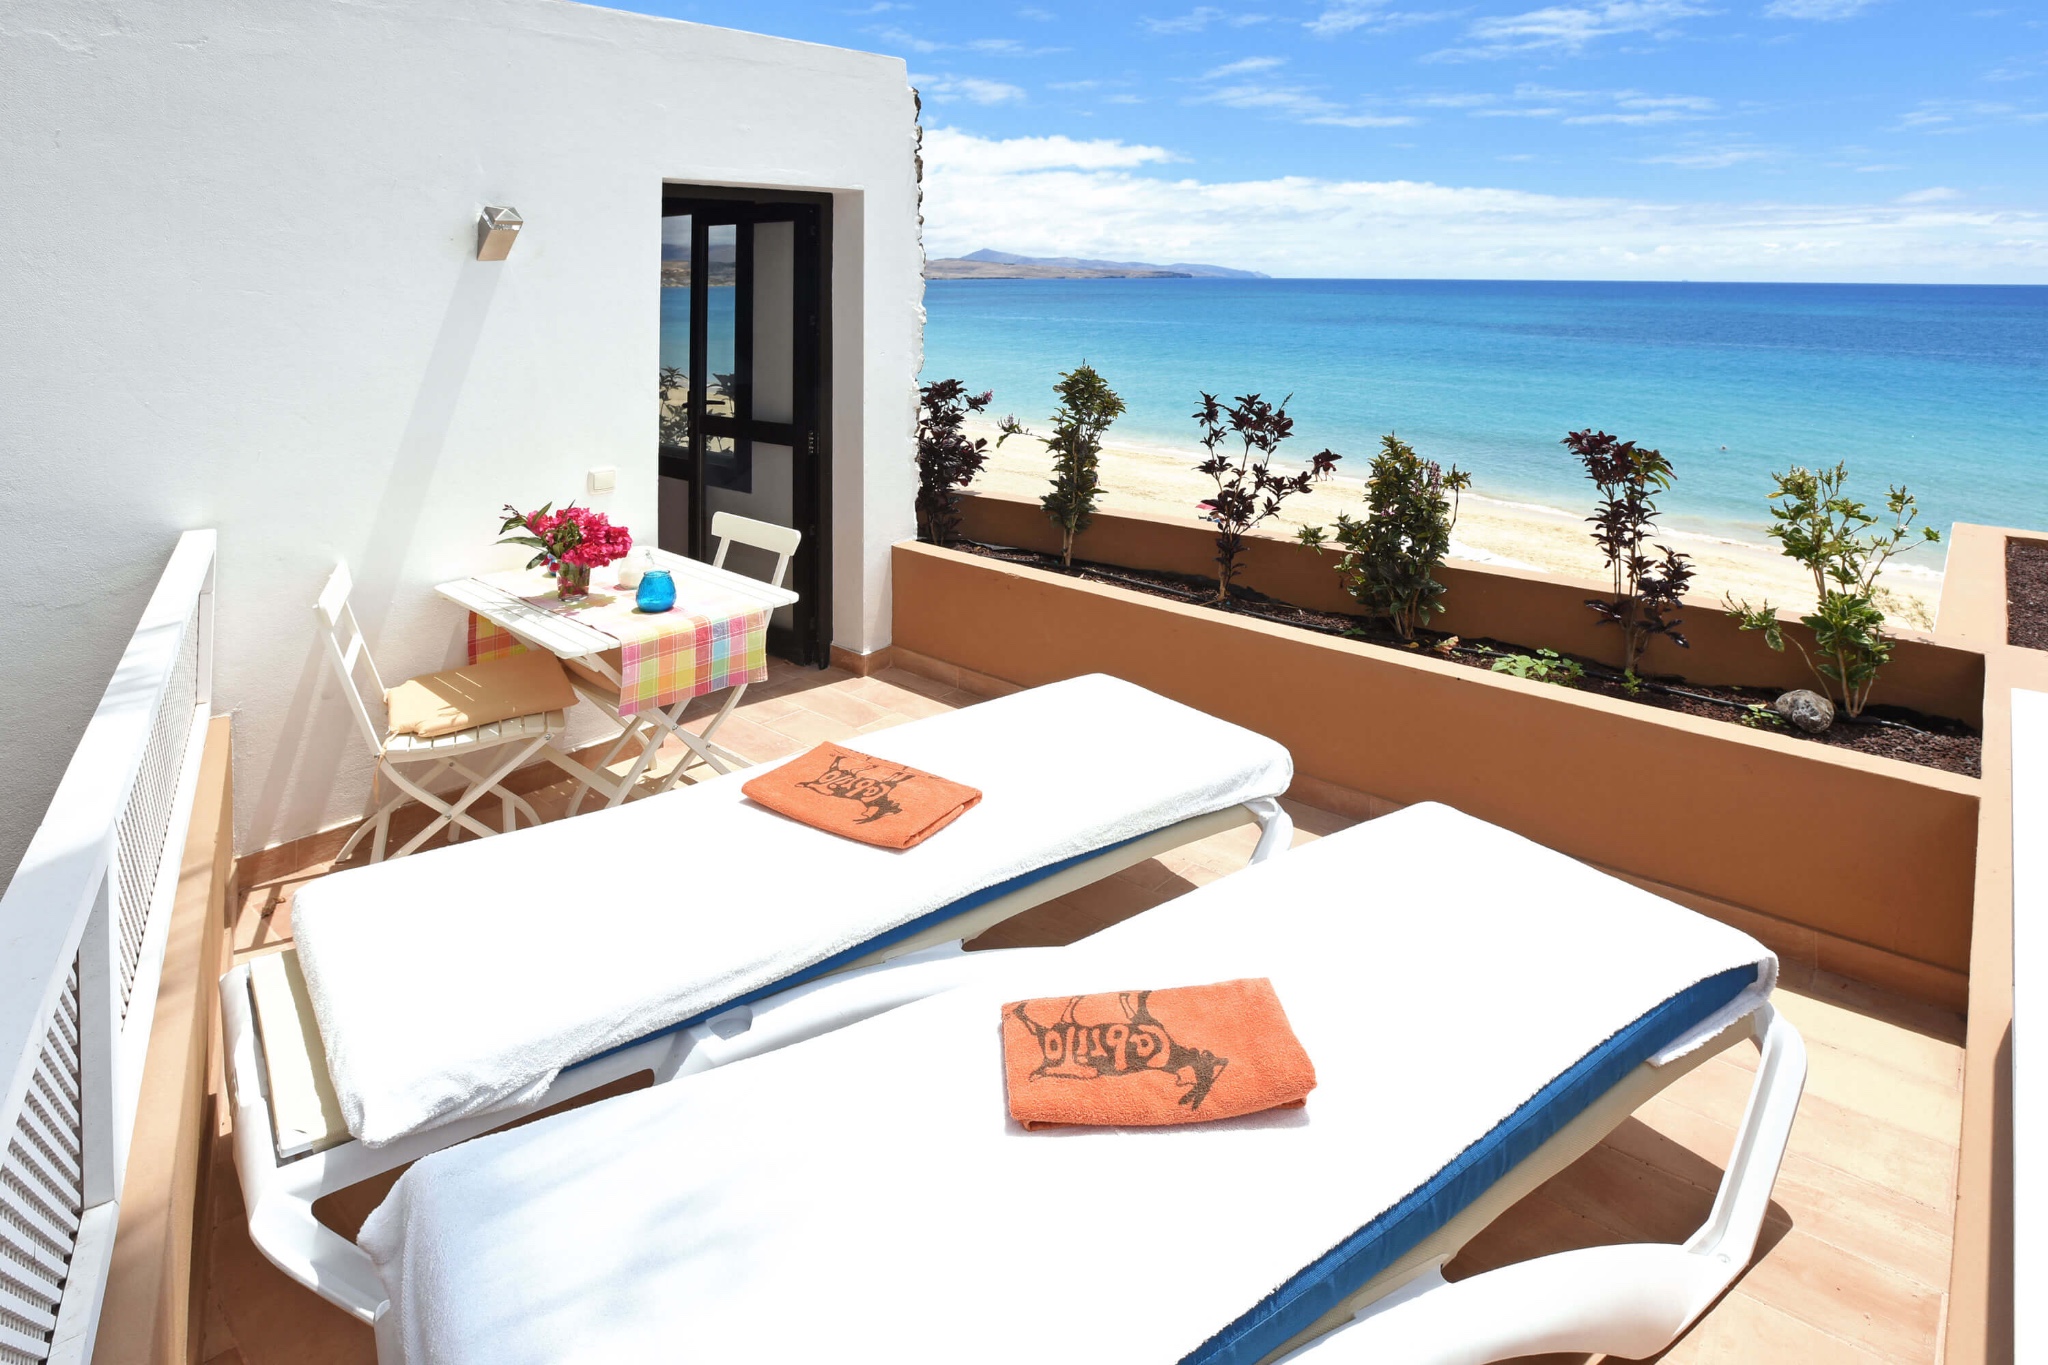 Moderní rekreační dům pro 2 osoby se nachází na pláži v Costa Calma s nádherným výhledem na moře